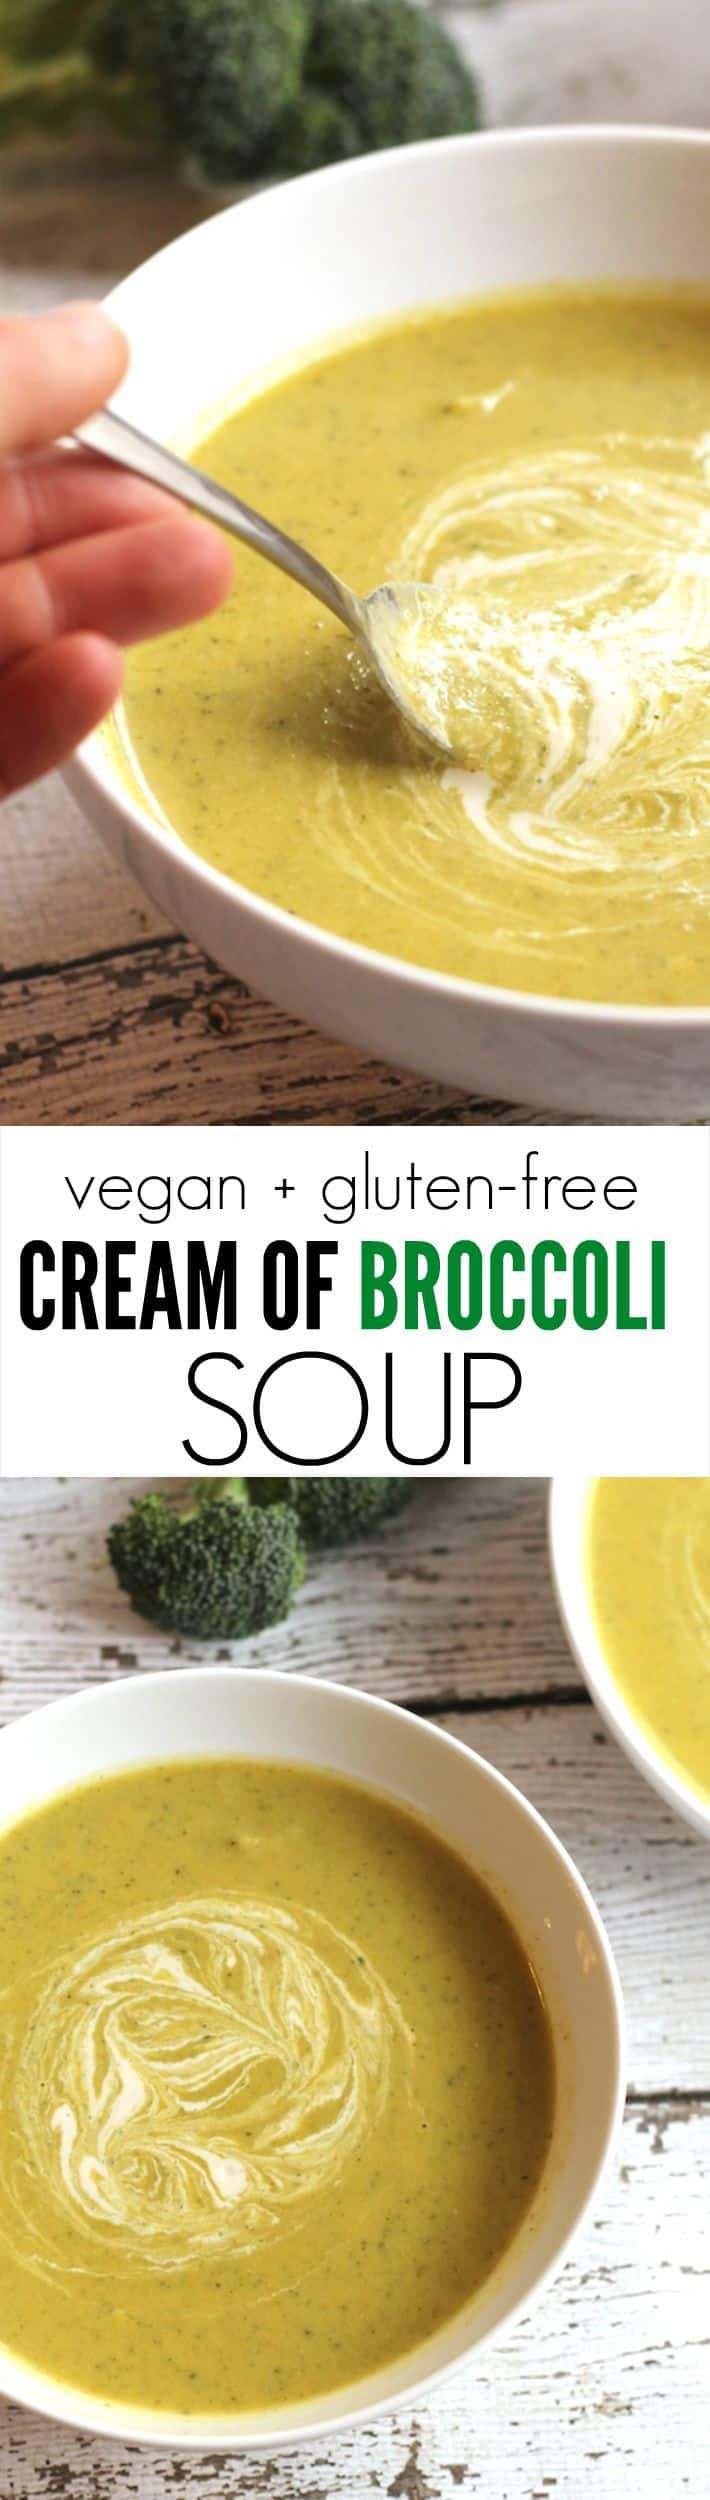 Healthy Cream Of Broccoli Soup
 Easy Healthy Vegan Cream of Broccoli Soup